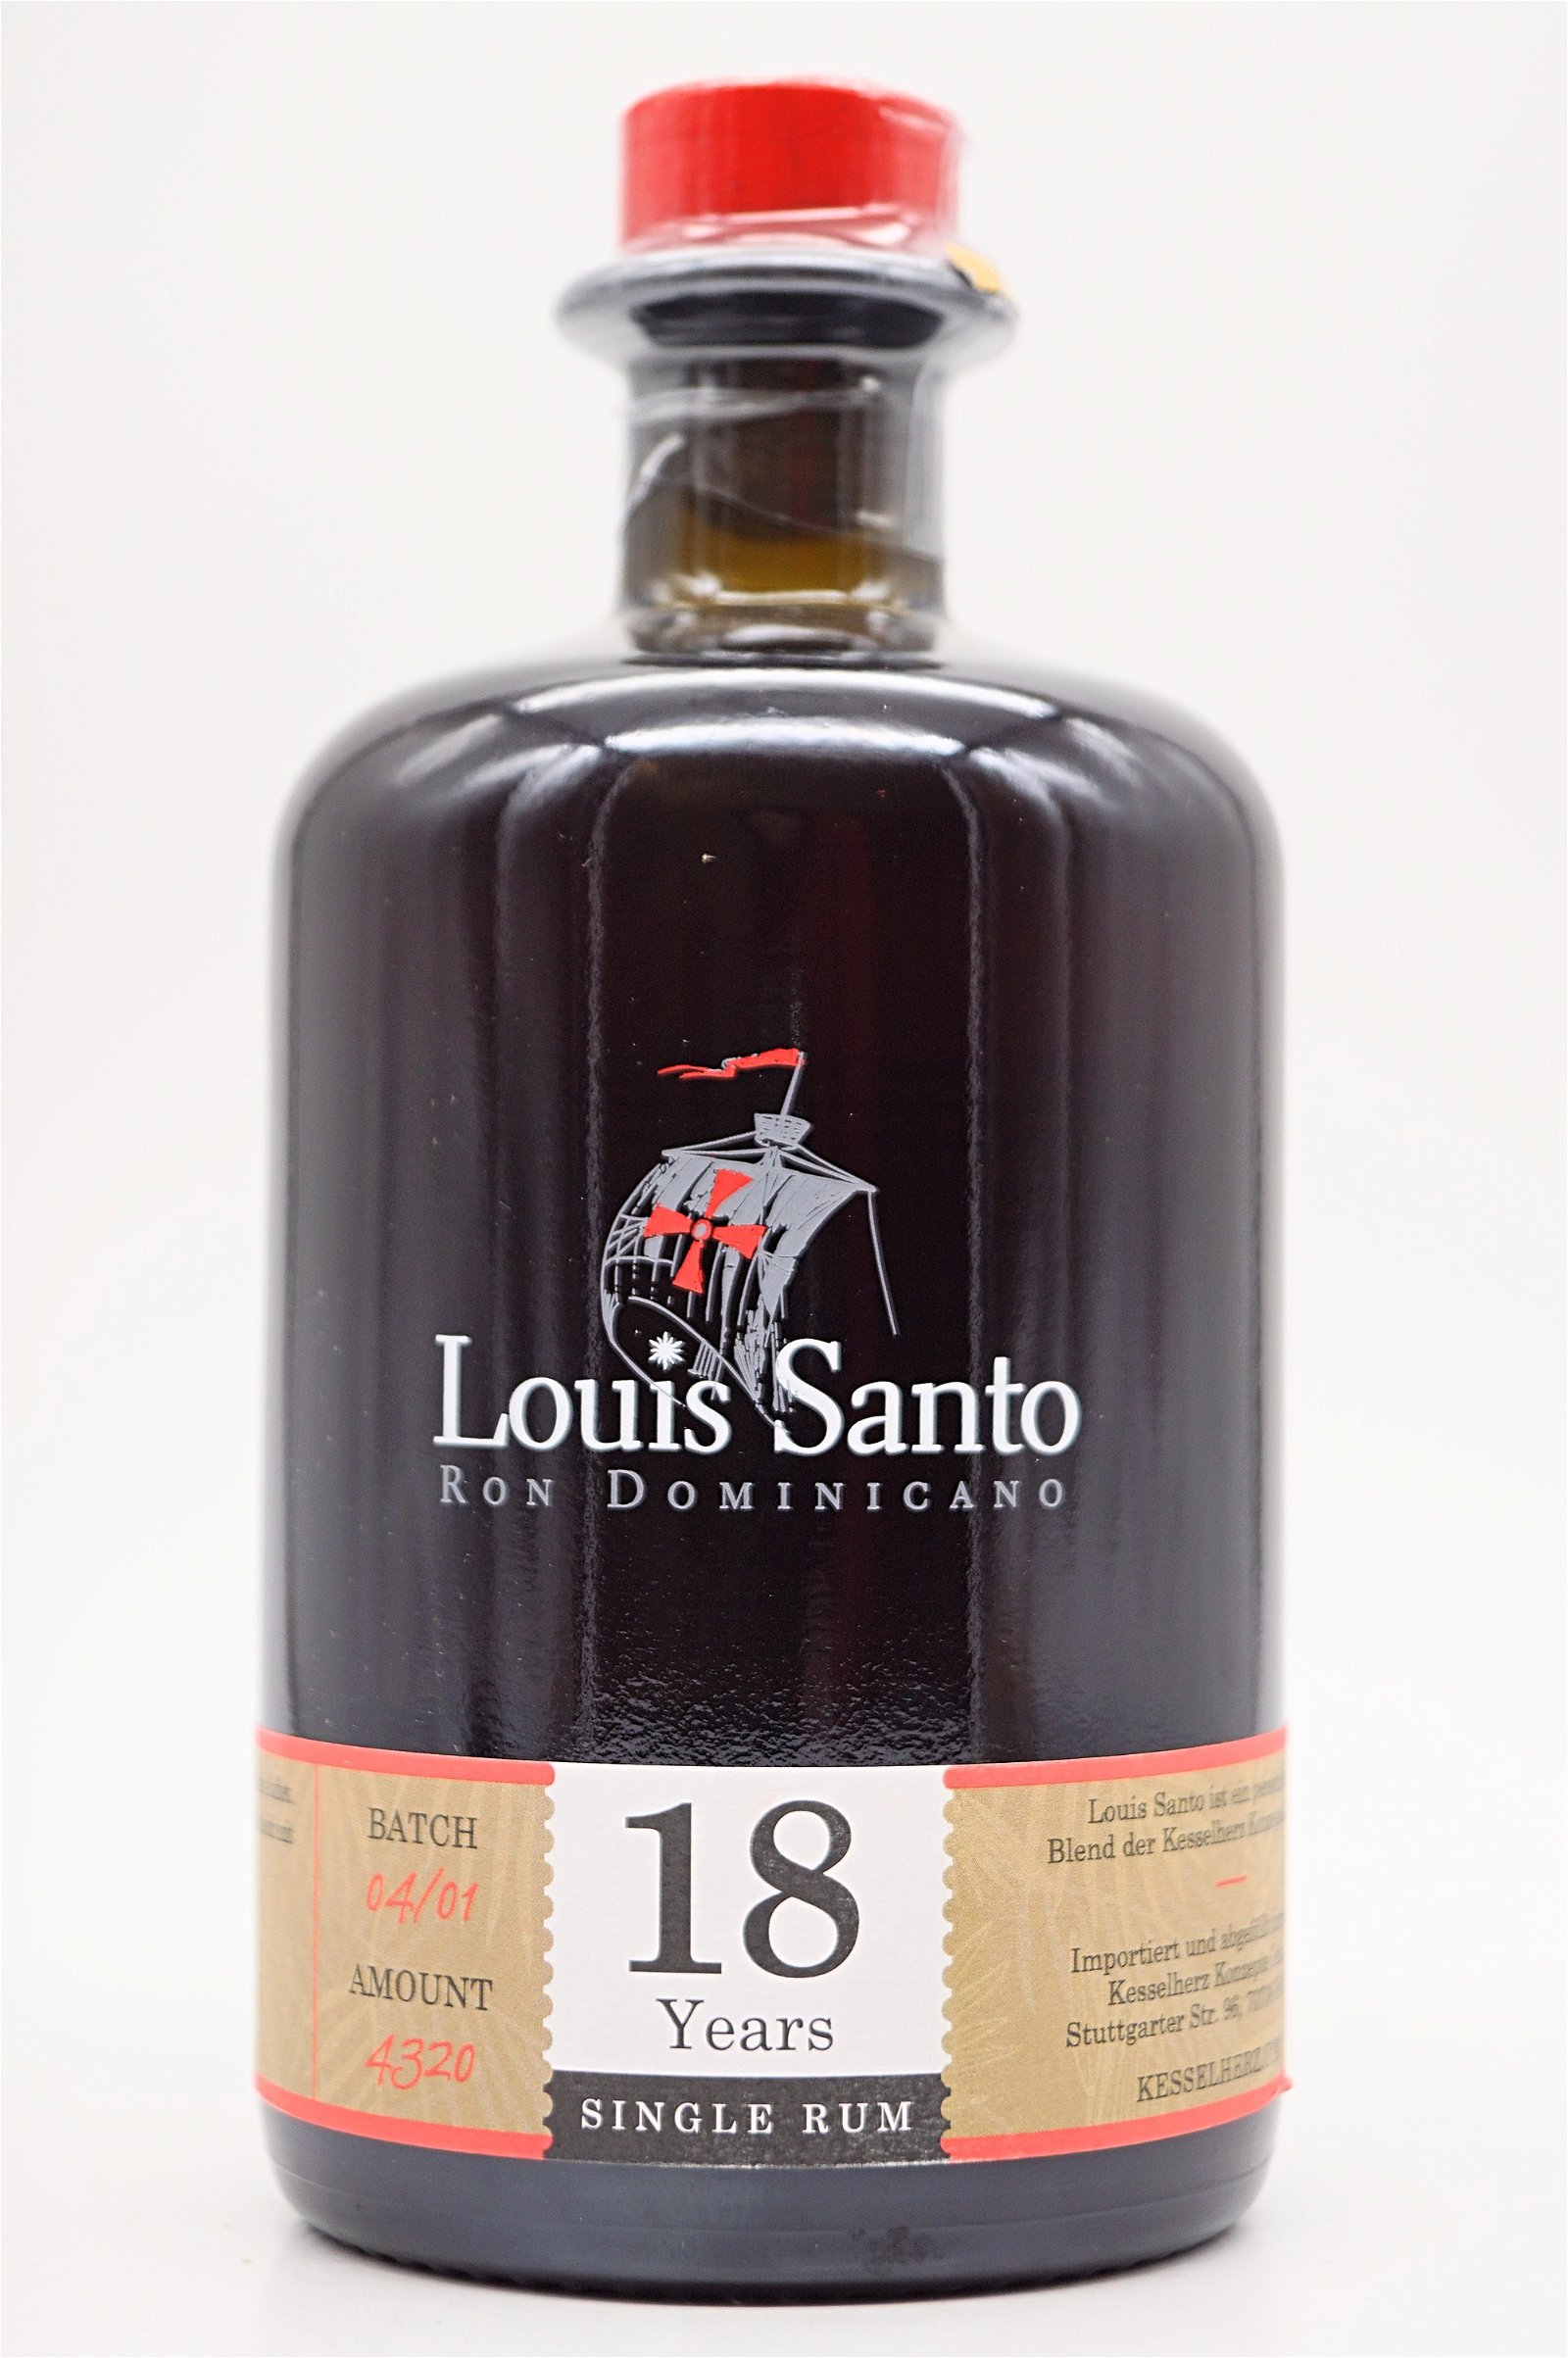 Louis Santo 18 Jahre Single Rum Batch 04/01